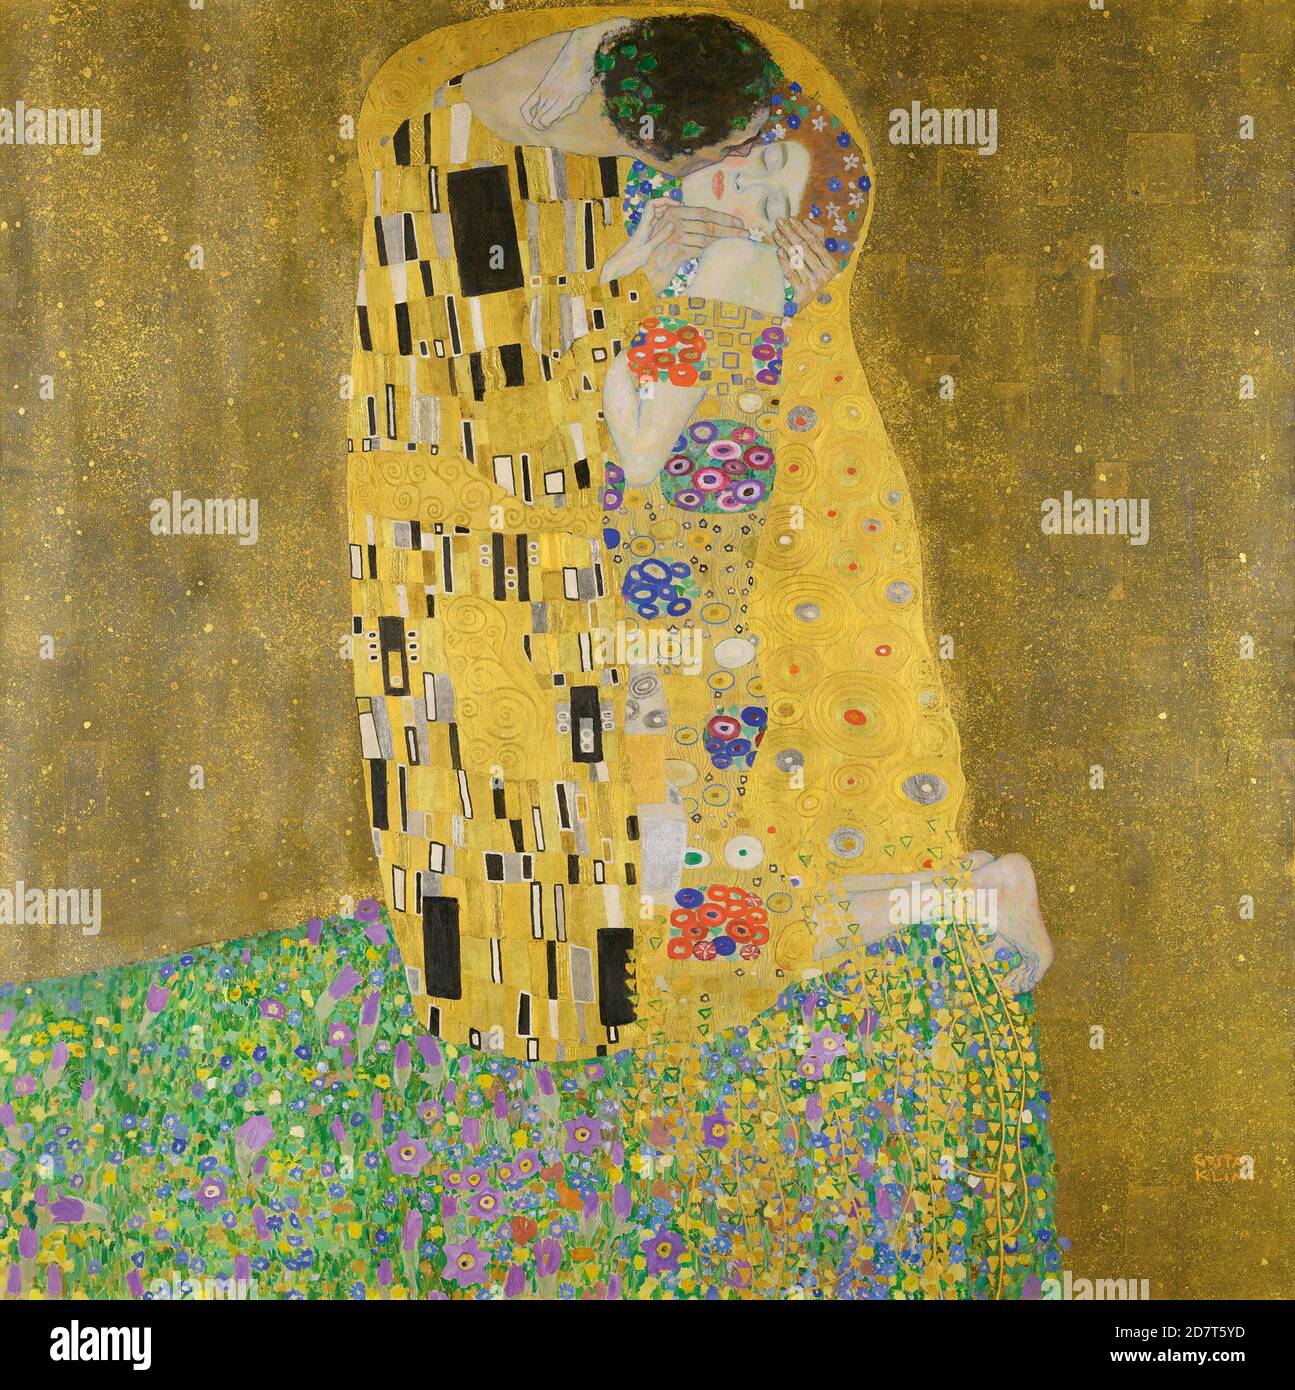 Title: The Kiss Creator: Gustav Klimt  Date: 1907 Medium: Oil on canvas Dimensions: 180 x 180 cms Location: Osterreichische Galerie Belvedere, Vienna Stock Photo